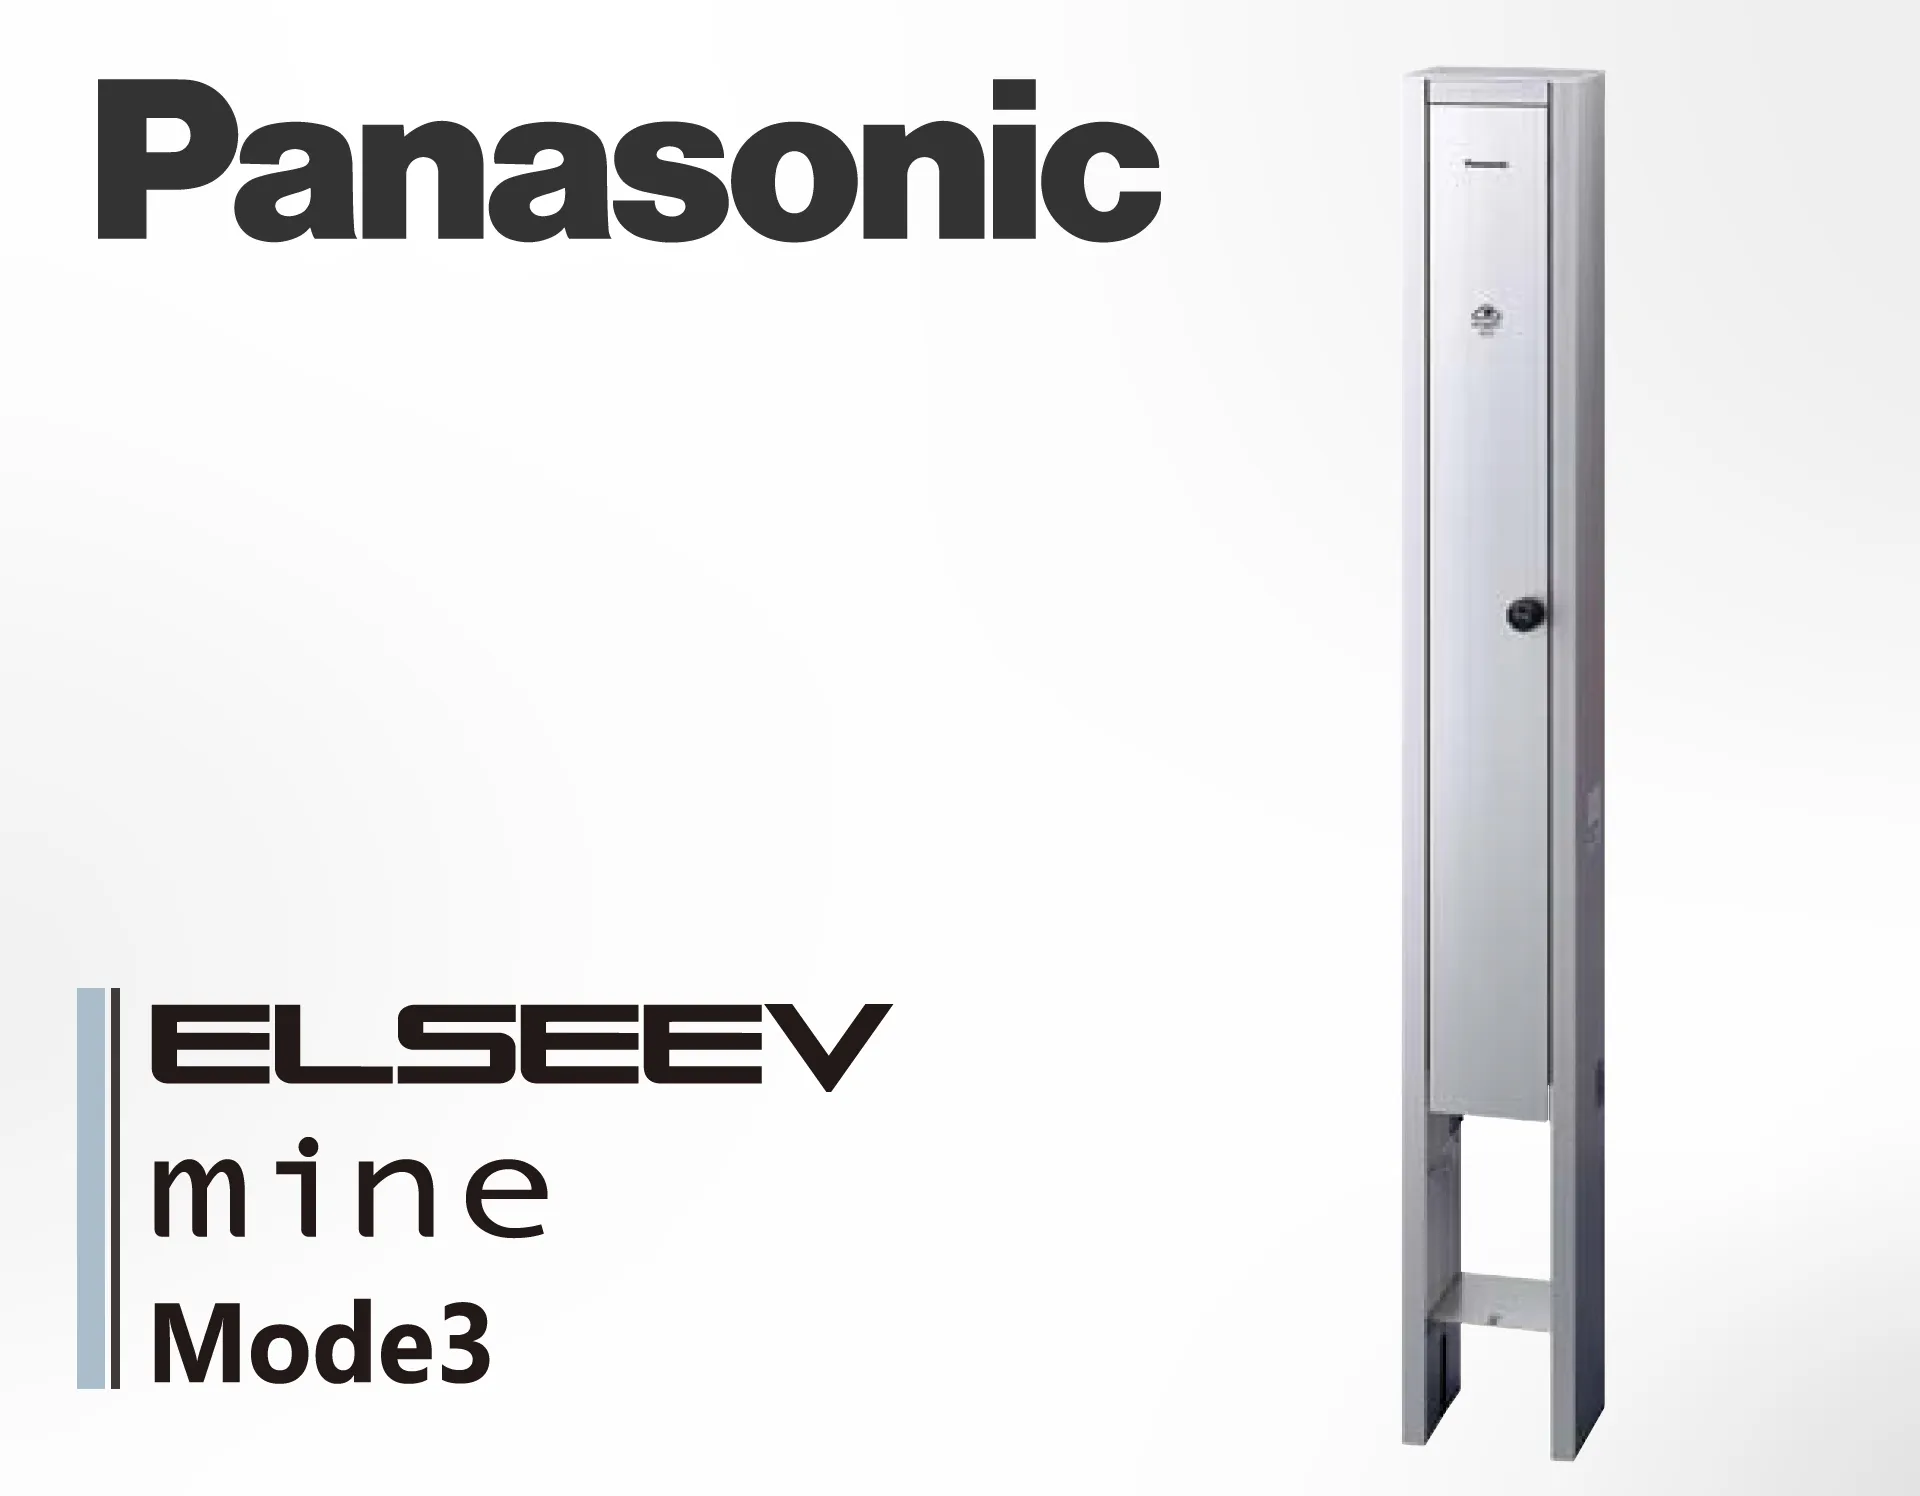 Panasonic ELSEEV mine Mode3 の製品詳細